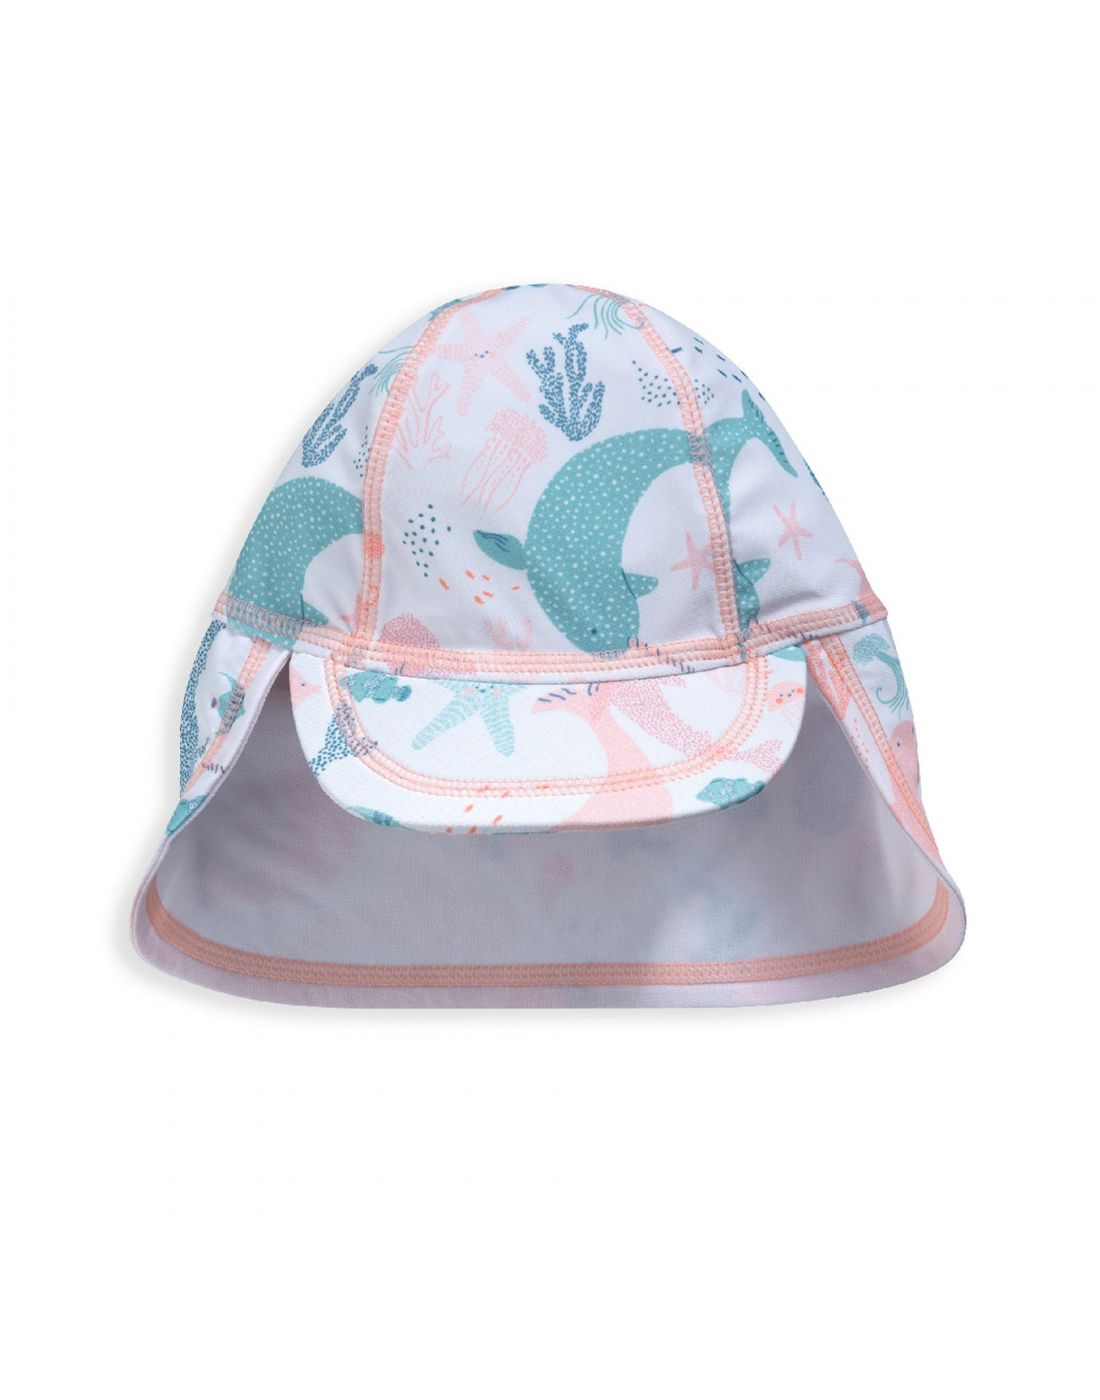 Παιδικό Καπέλο με Ηλιοπροστασία Mamas & Papas | LAPIN KIDS